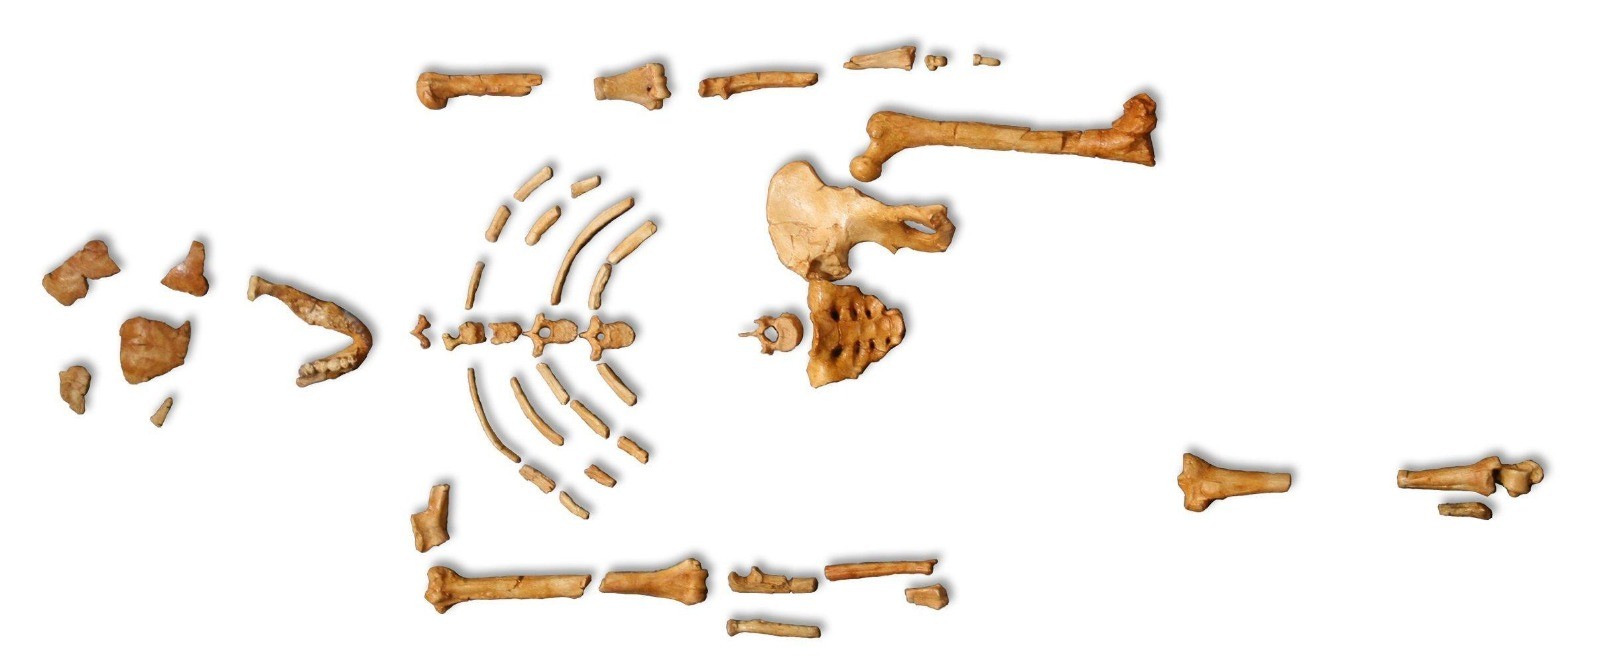 Lucy Australopithecus Afarensis skeleton